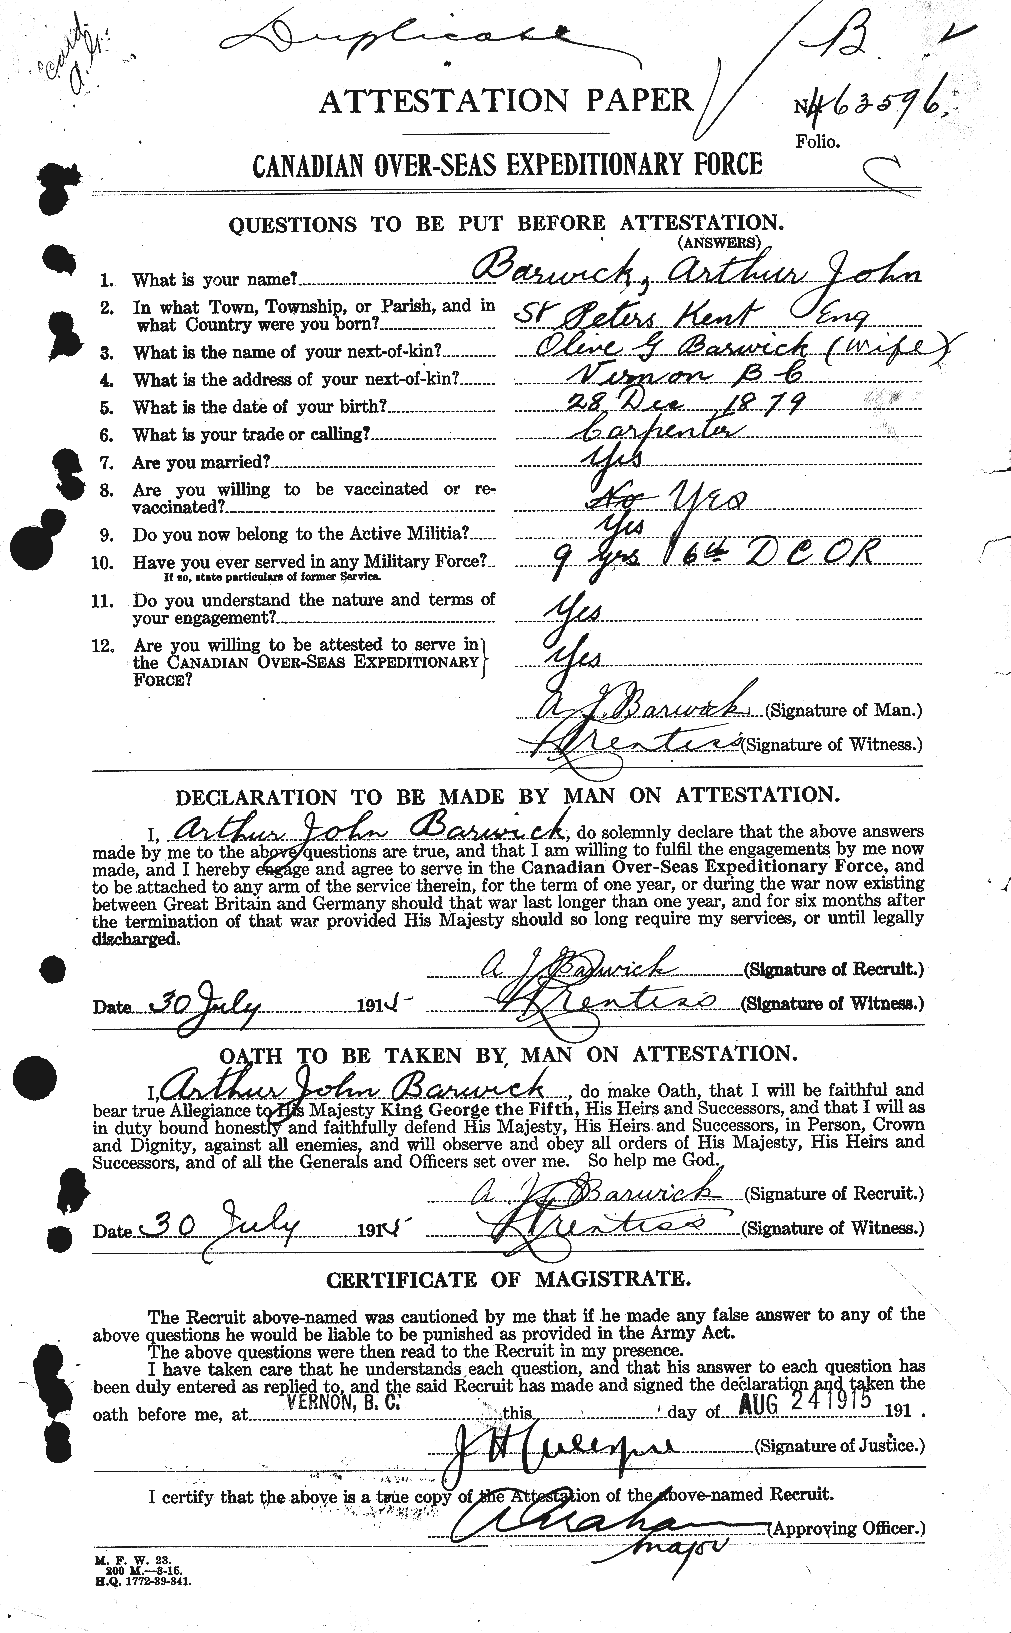 Dossiers du Personnel de la Première Guerre mondiale - CEC 222002a